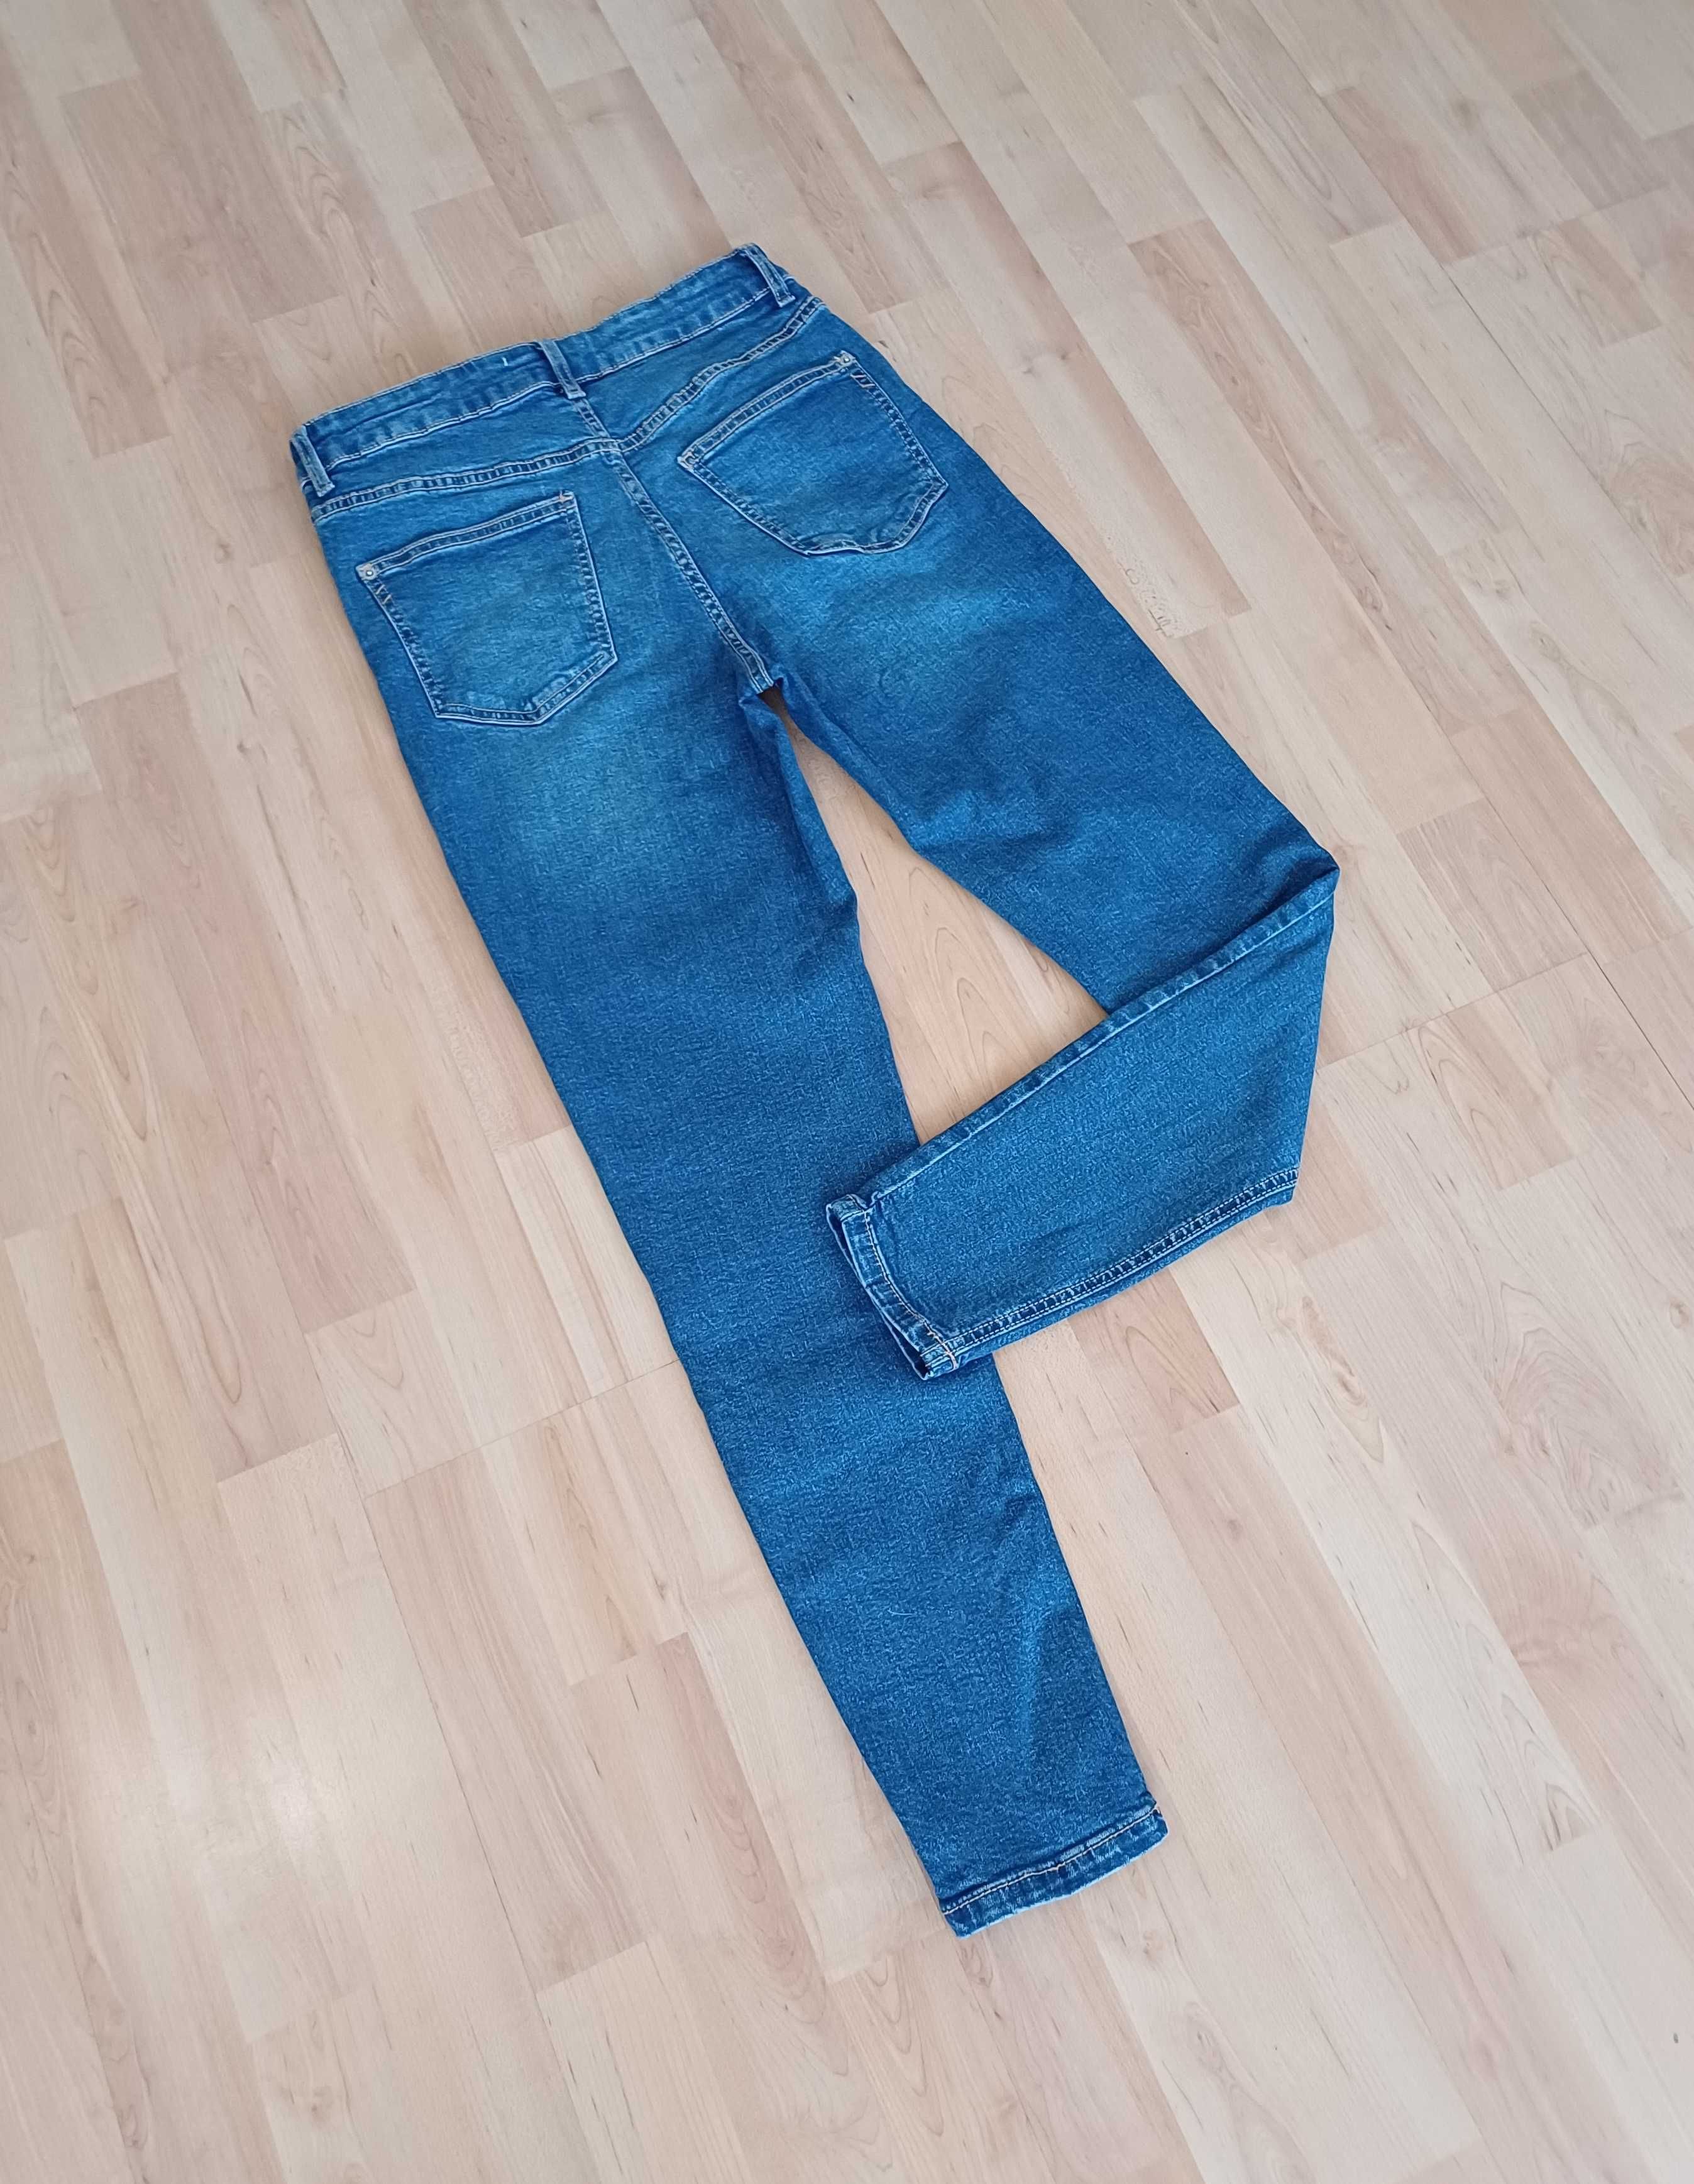 Spodnie długie damskie dżinsowe z wysokim stanem wąskie nogawki 38/M